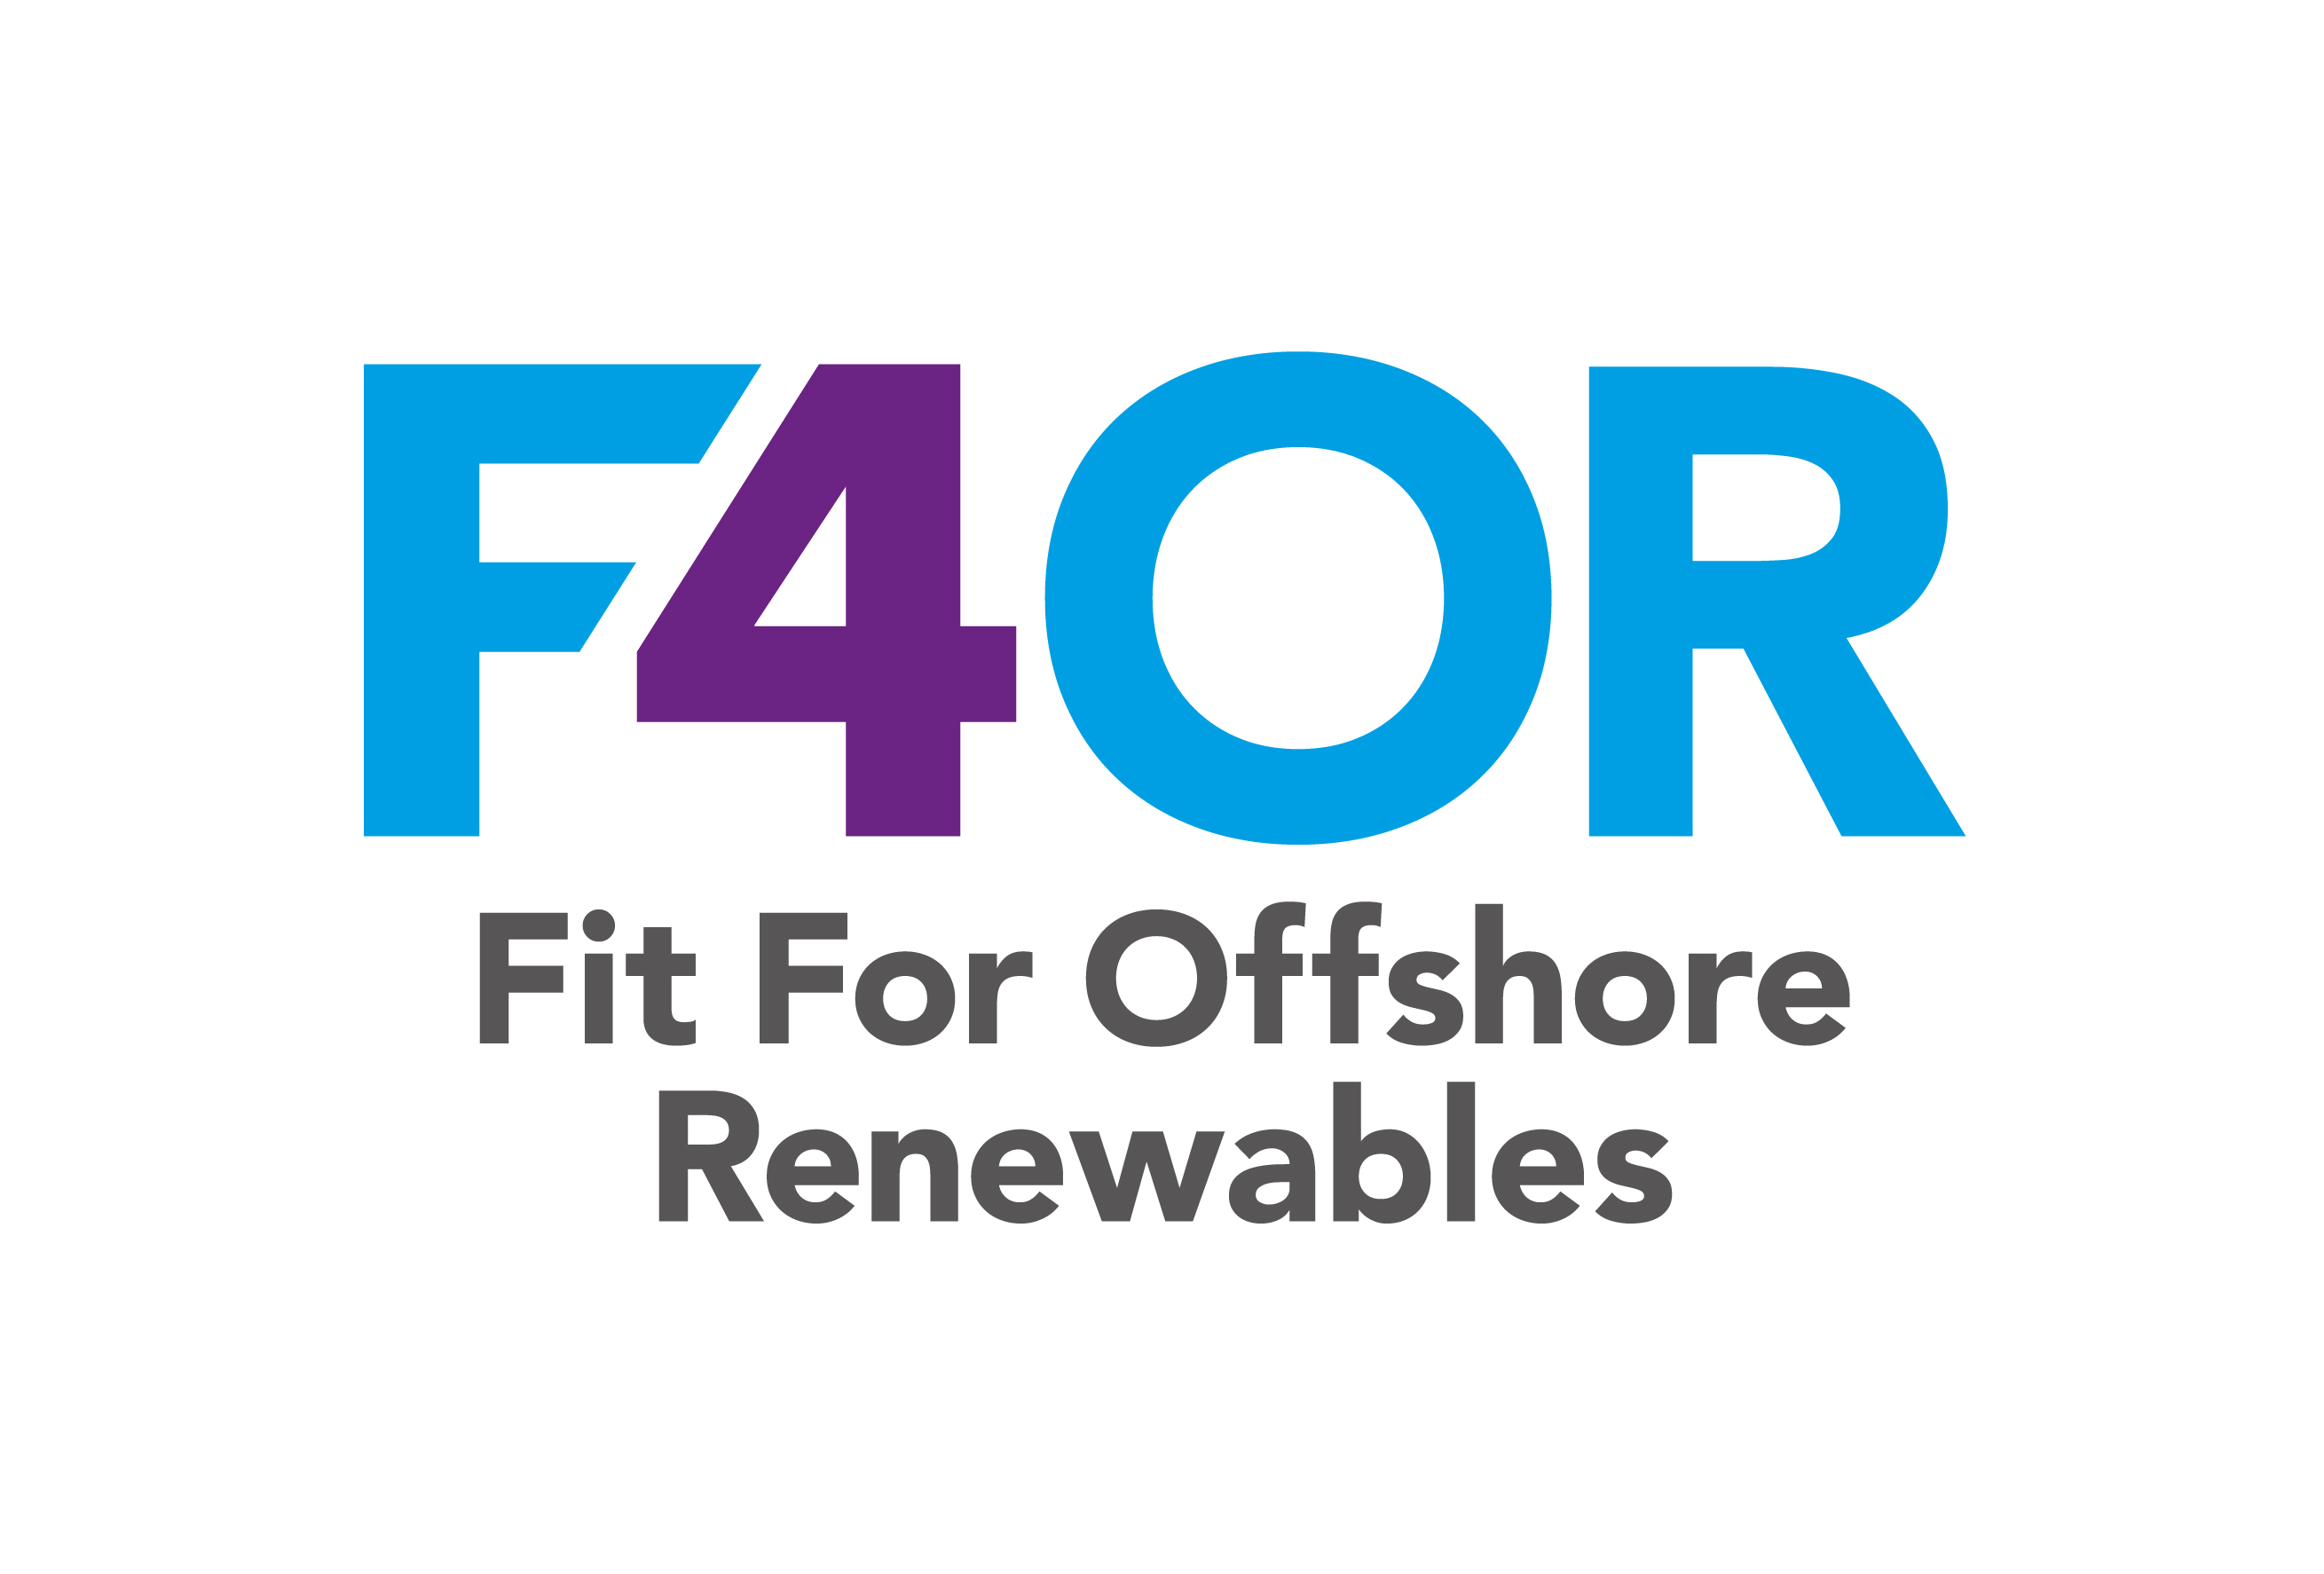 Fit For offshore renewables program